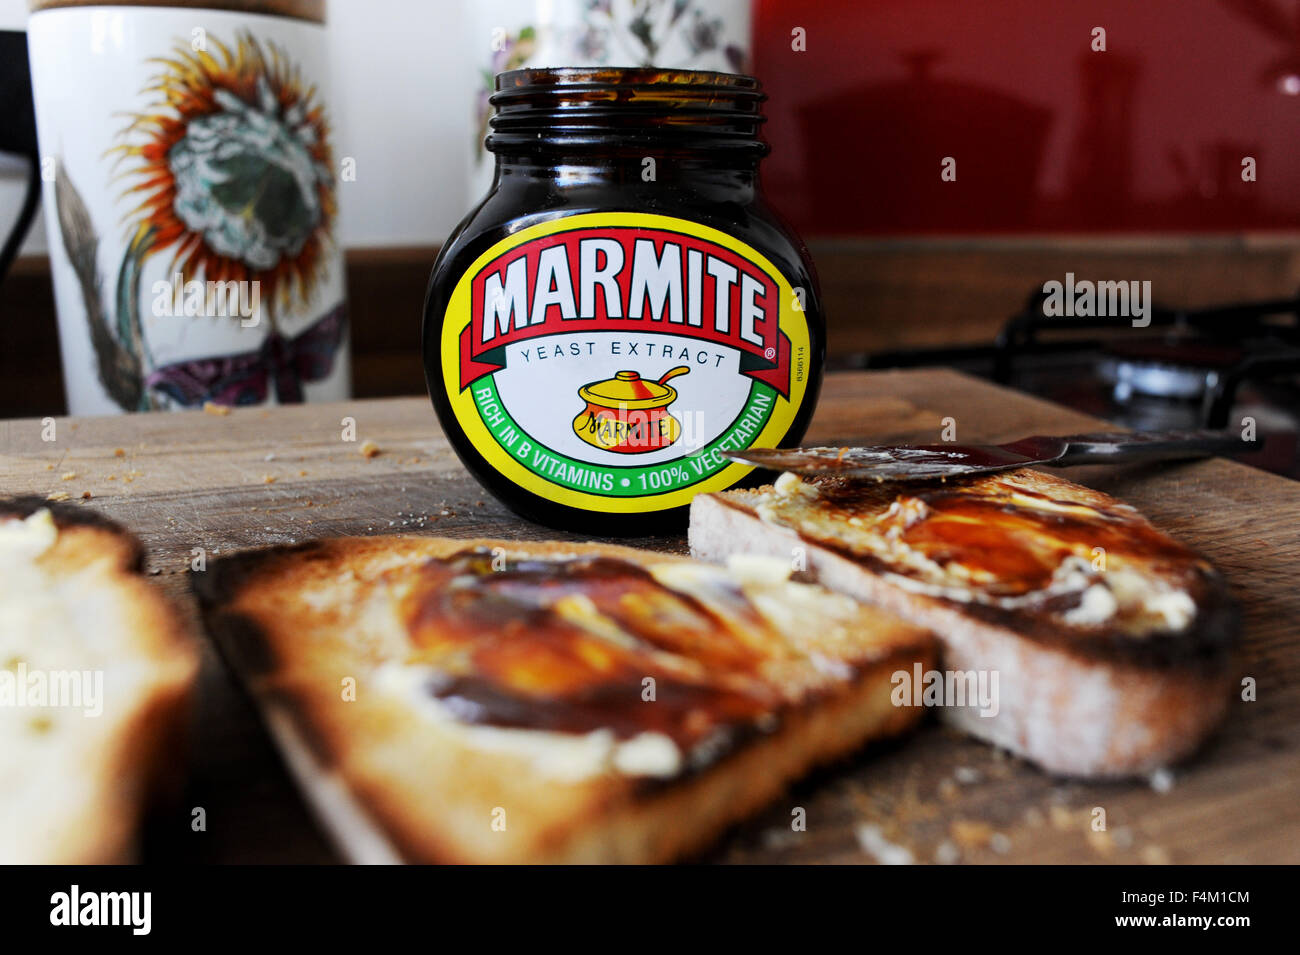 Marmite su toast lo amate o lo odiate famoso British diffusione fatta di estratto di lievito Foto Stock